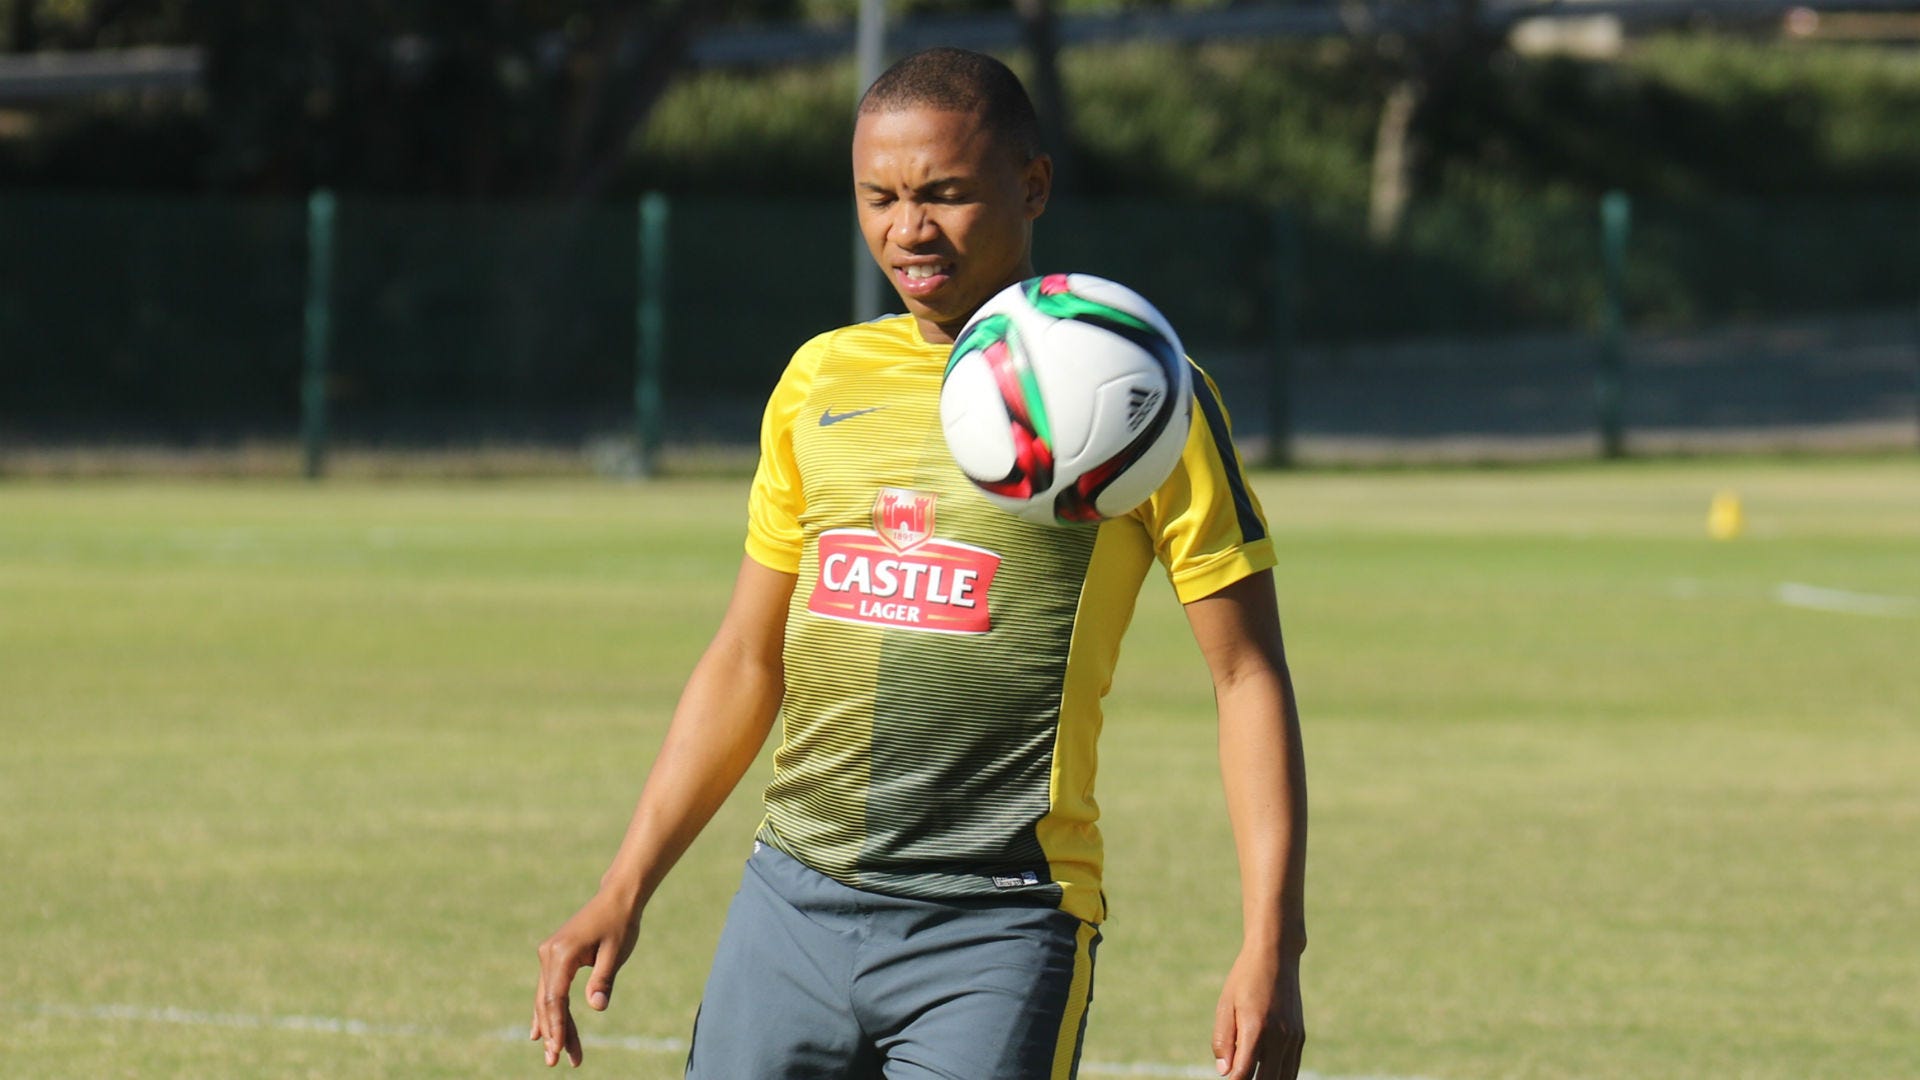 Andile Jali - Bafana Bafana